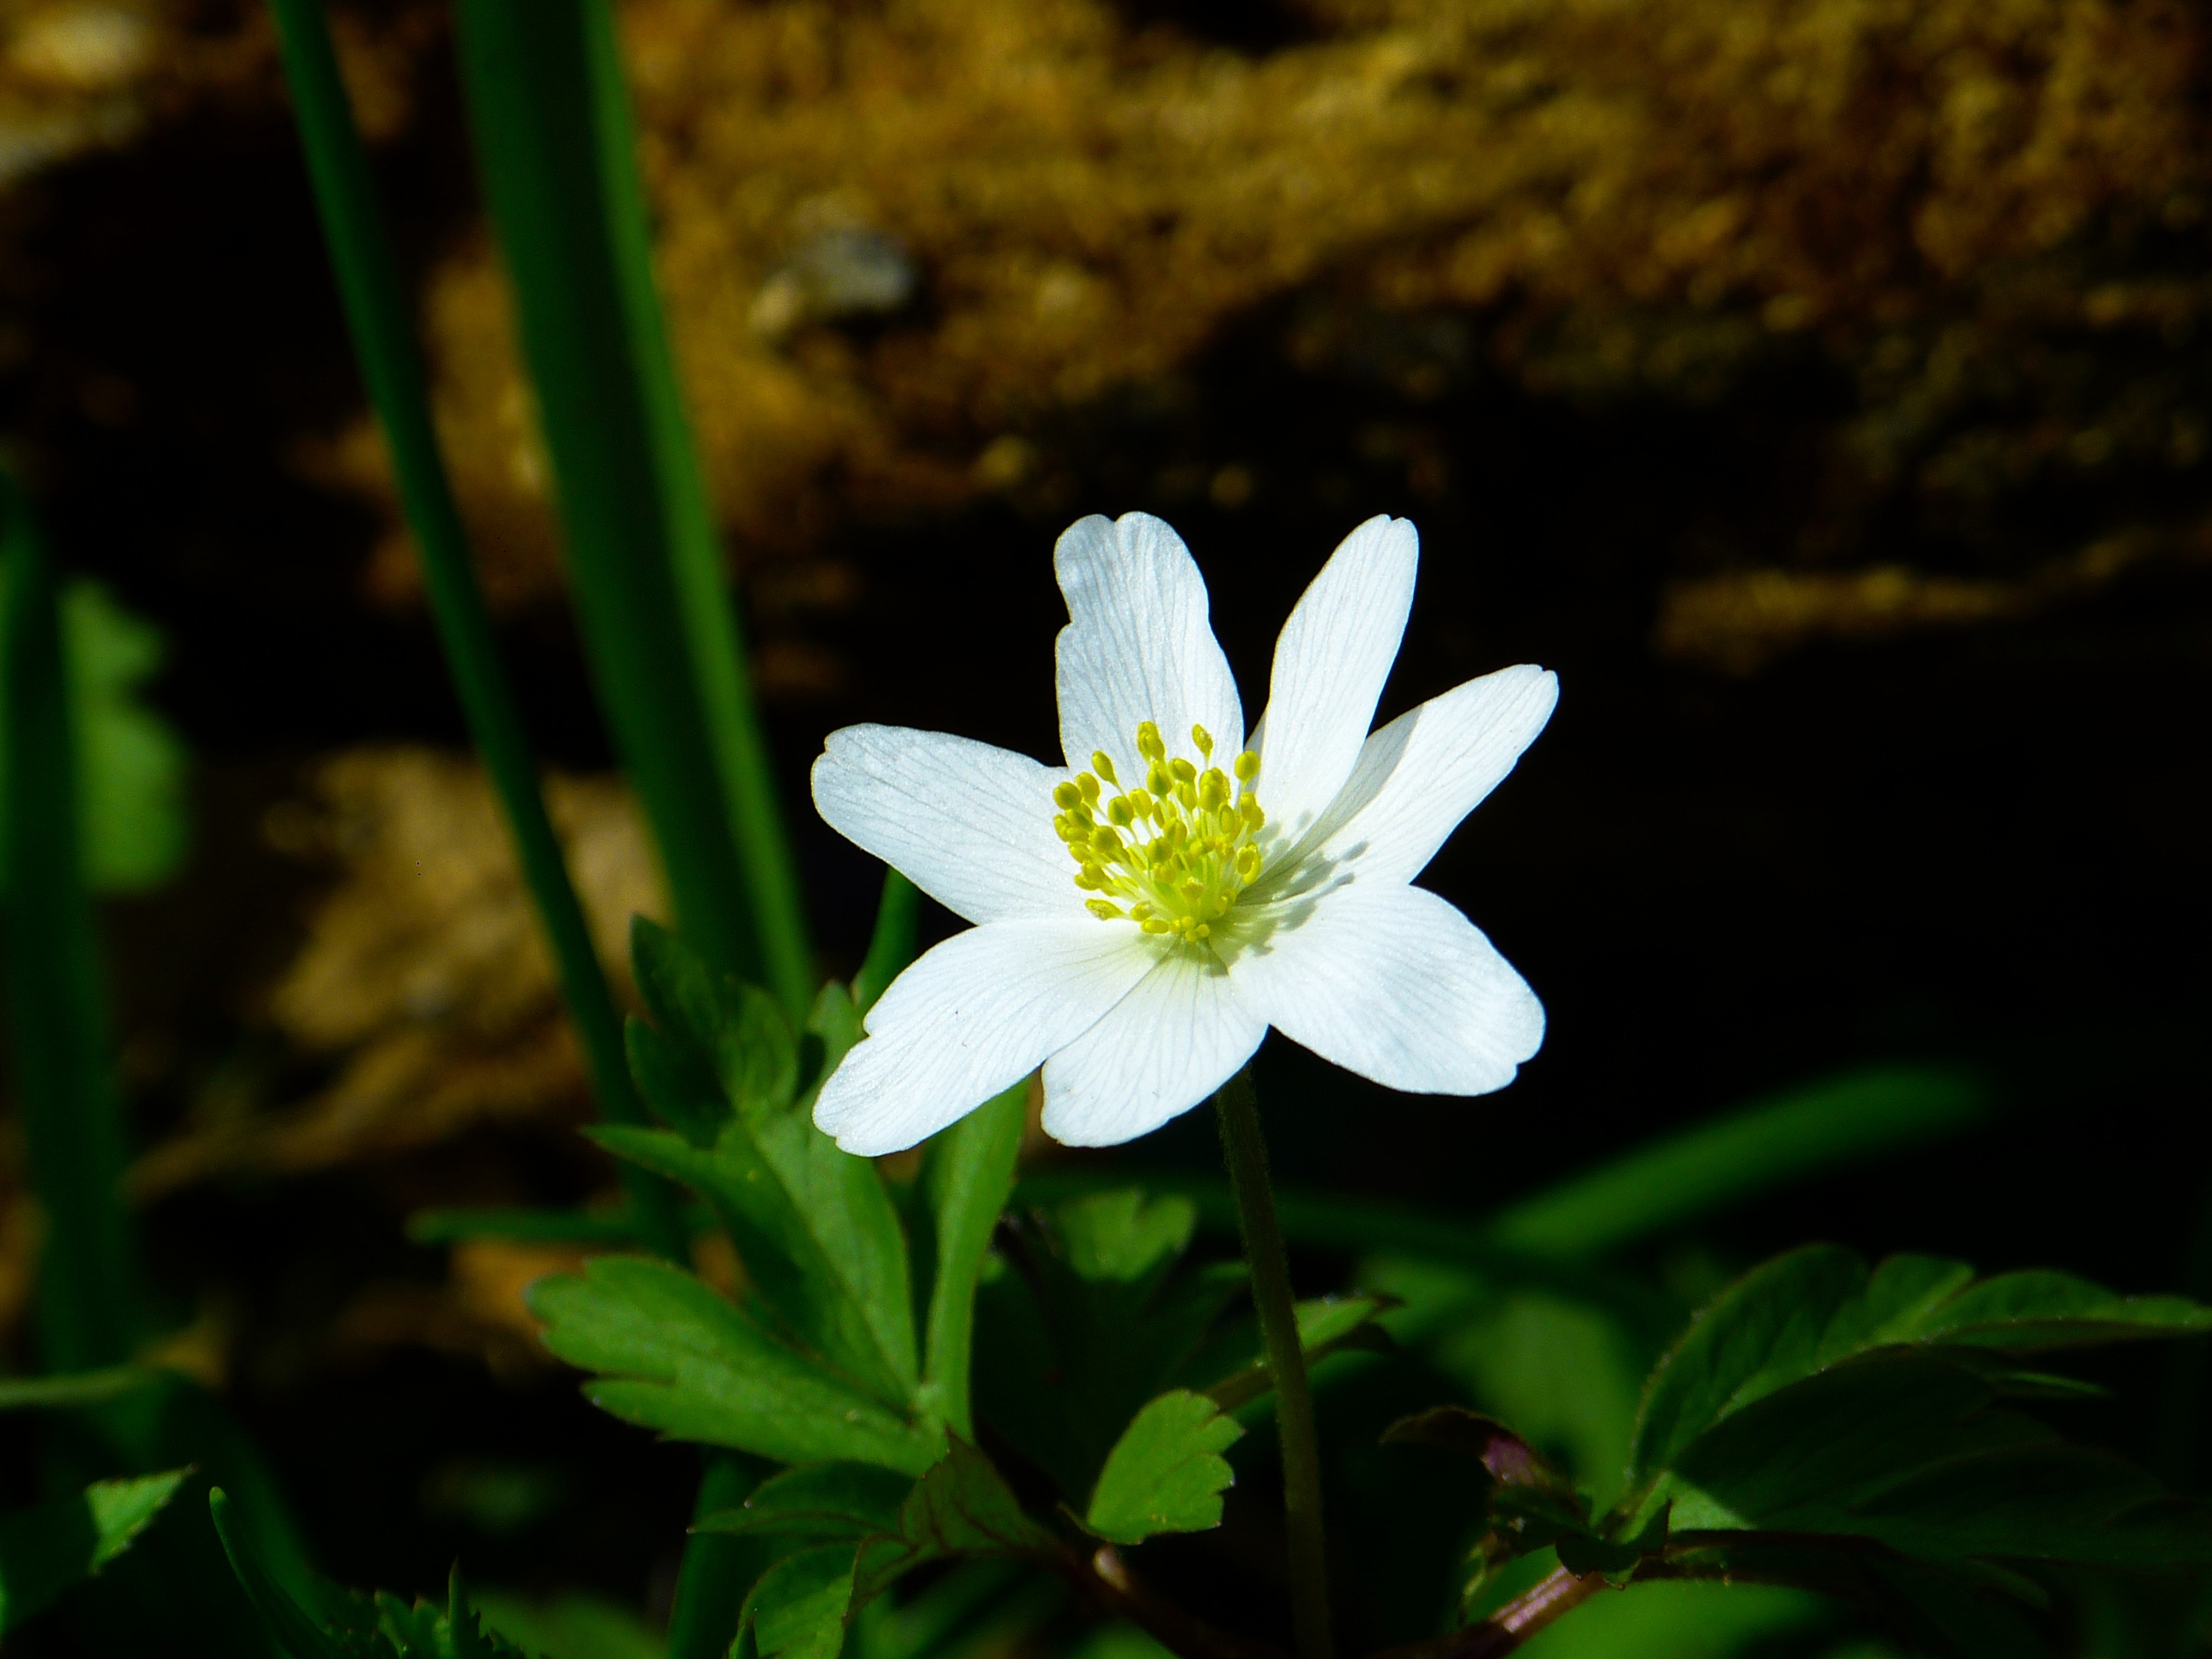 bloomed white petaled flower